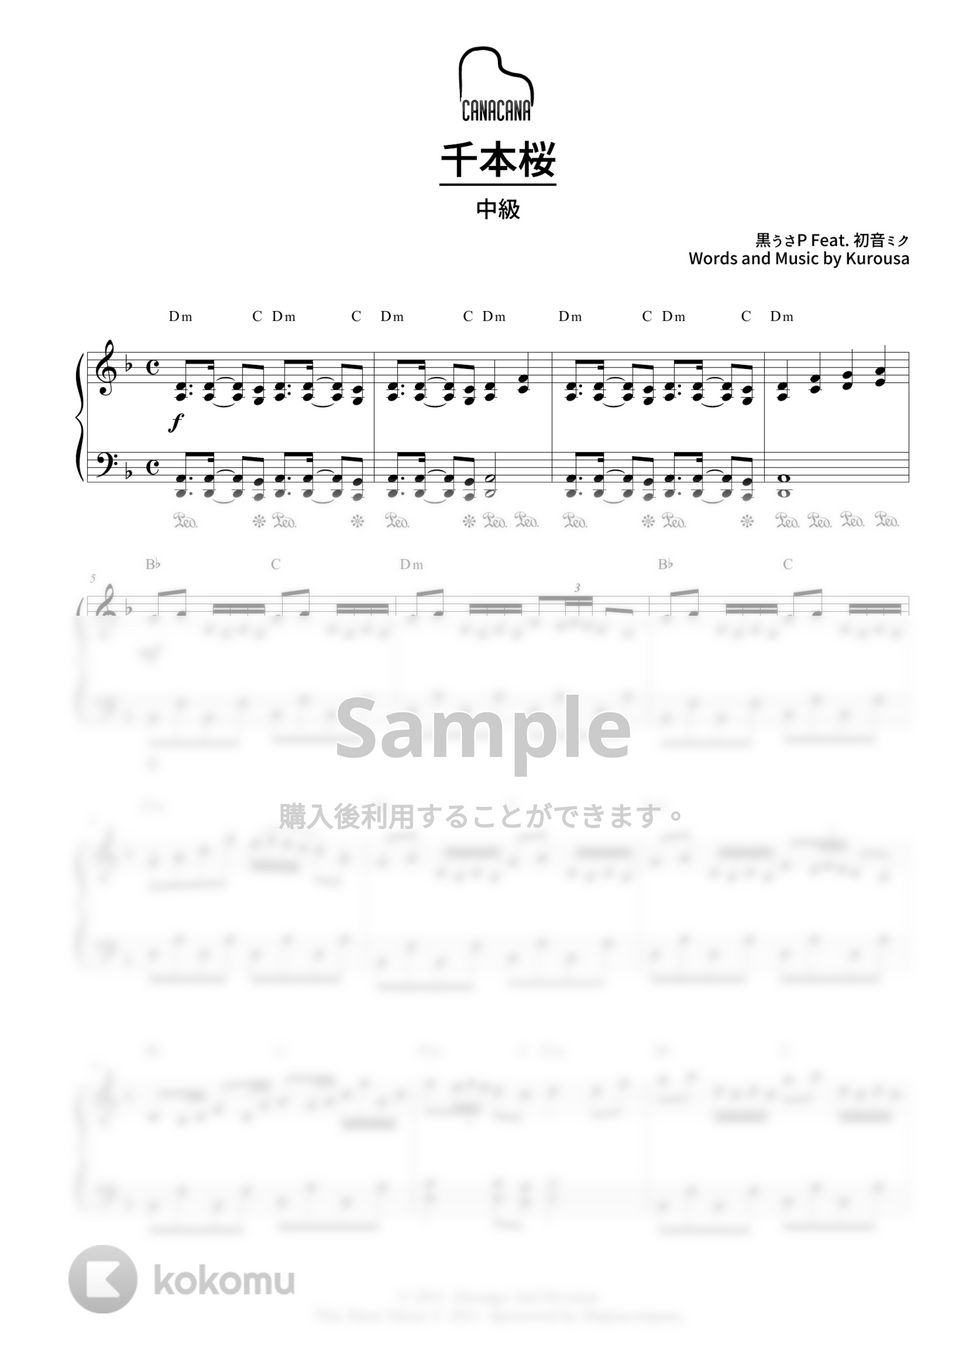 黒うさP Feat. 初音ミク - 千本桜 (中級) by CANACANA family